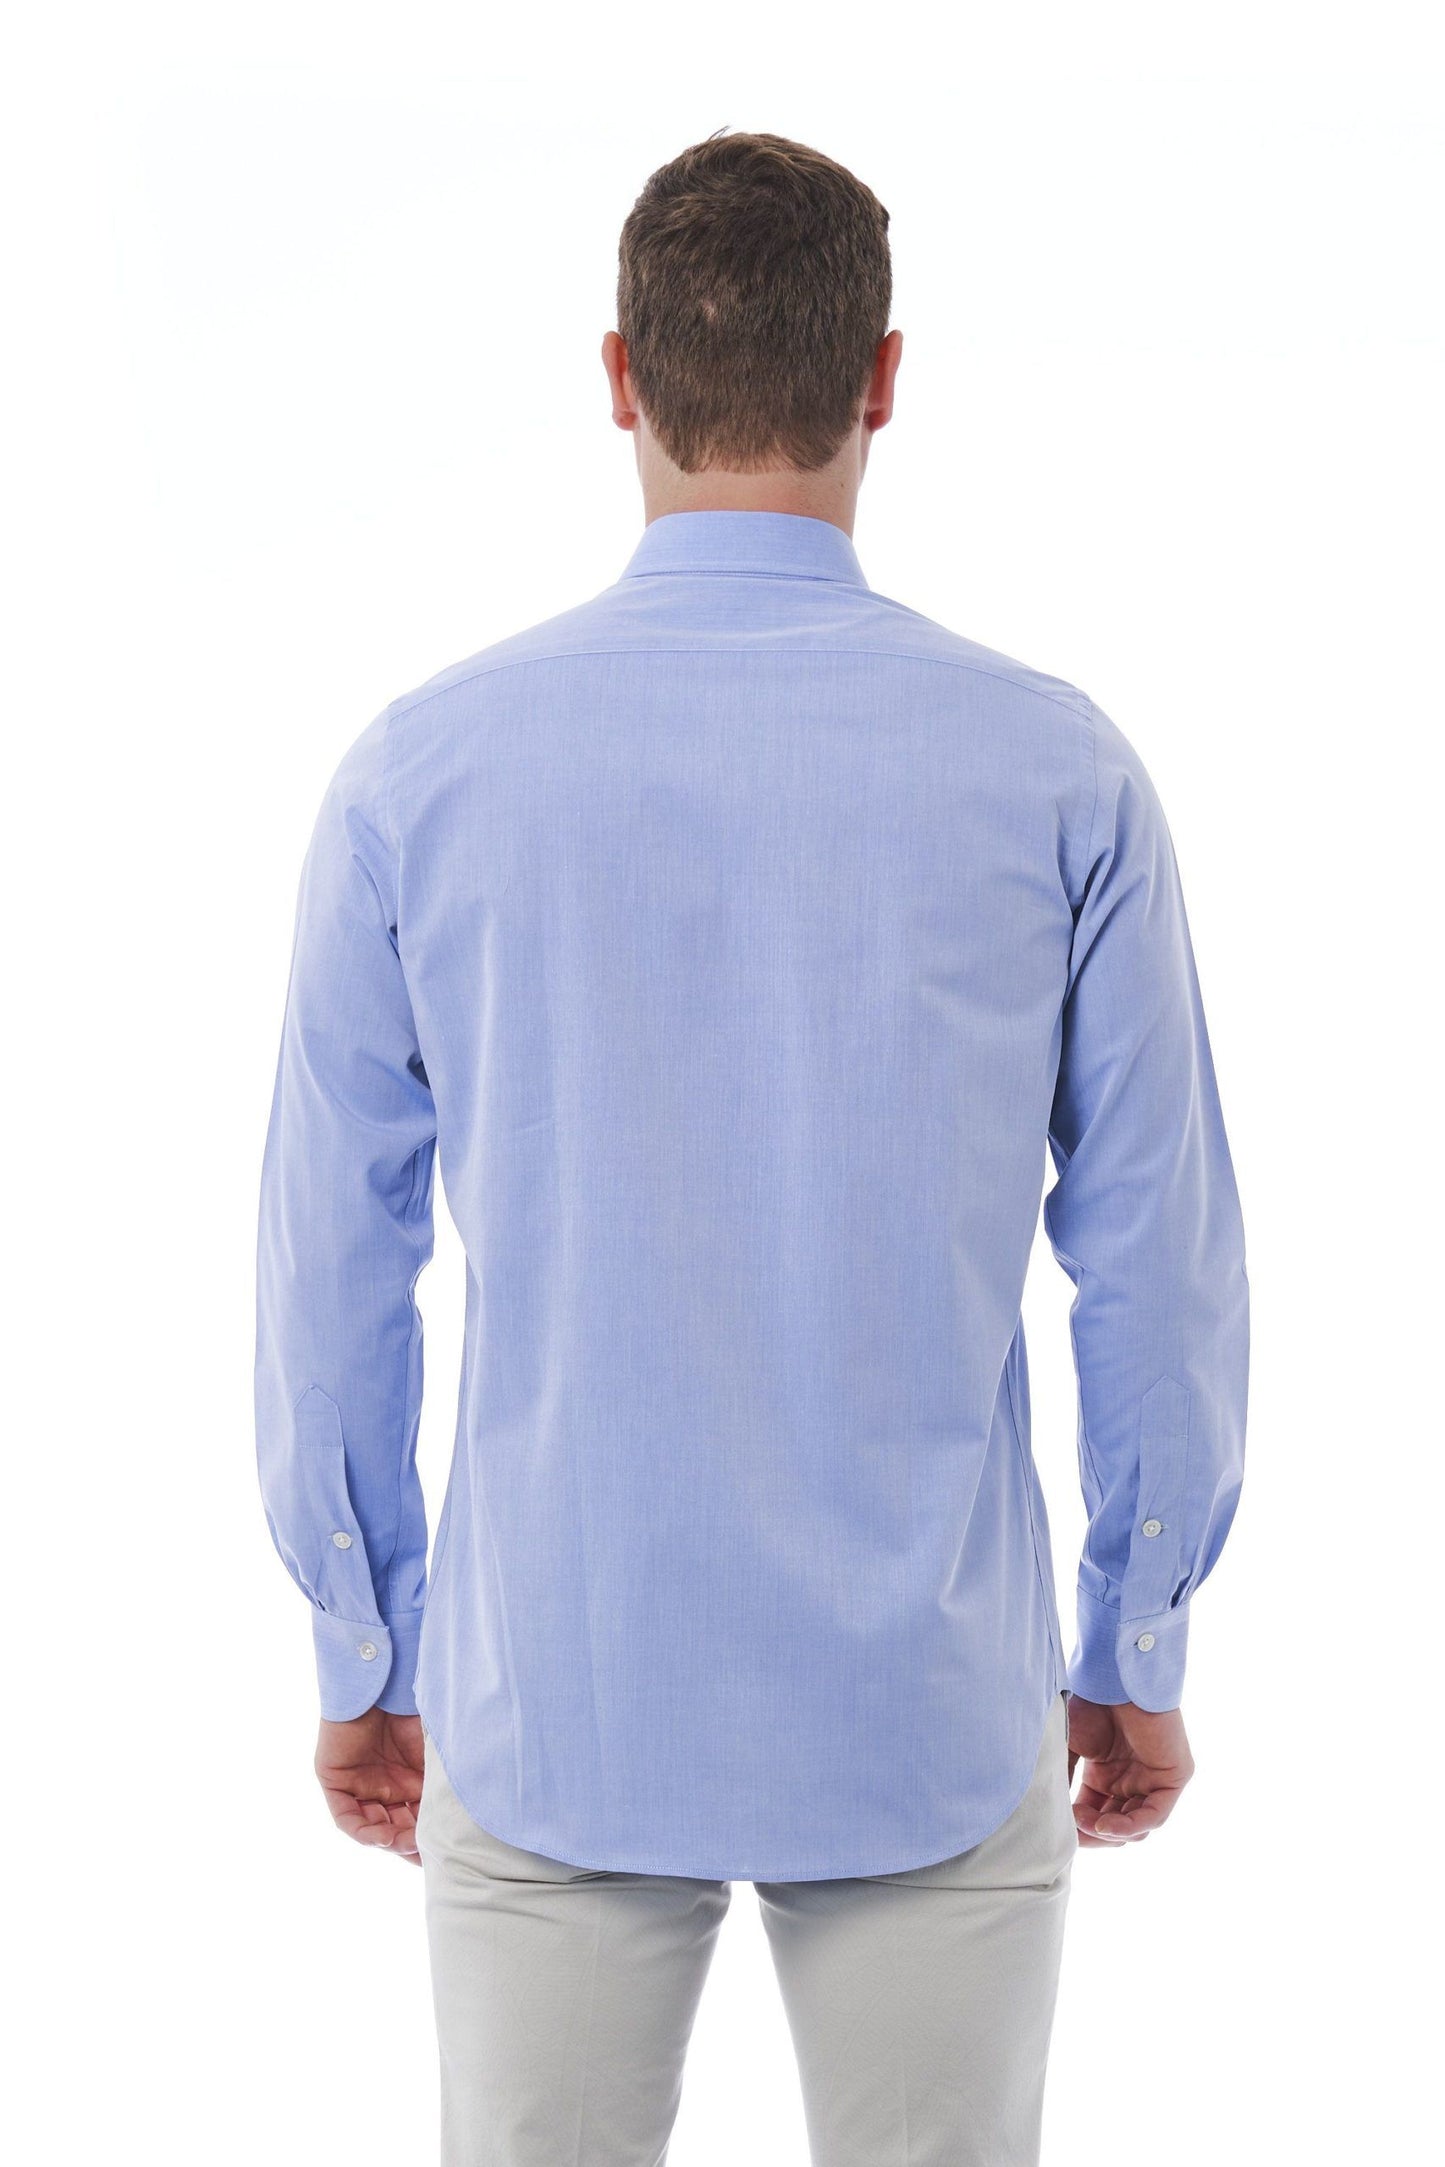 Elegant Light-Blue Italian Collar Shirt